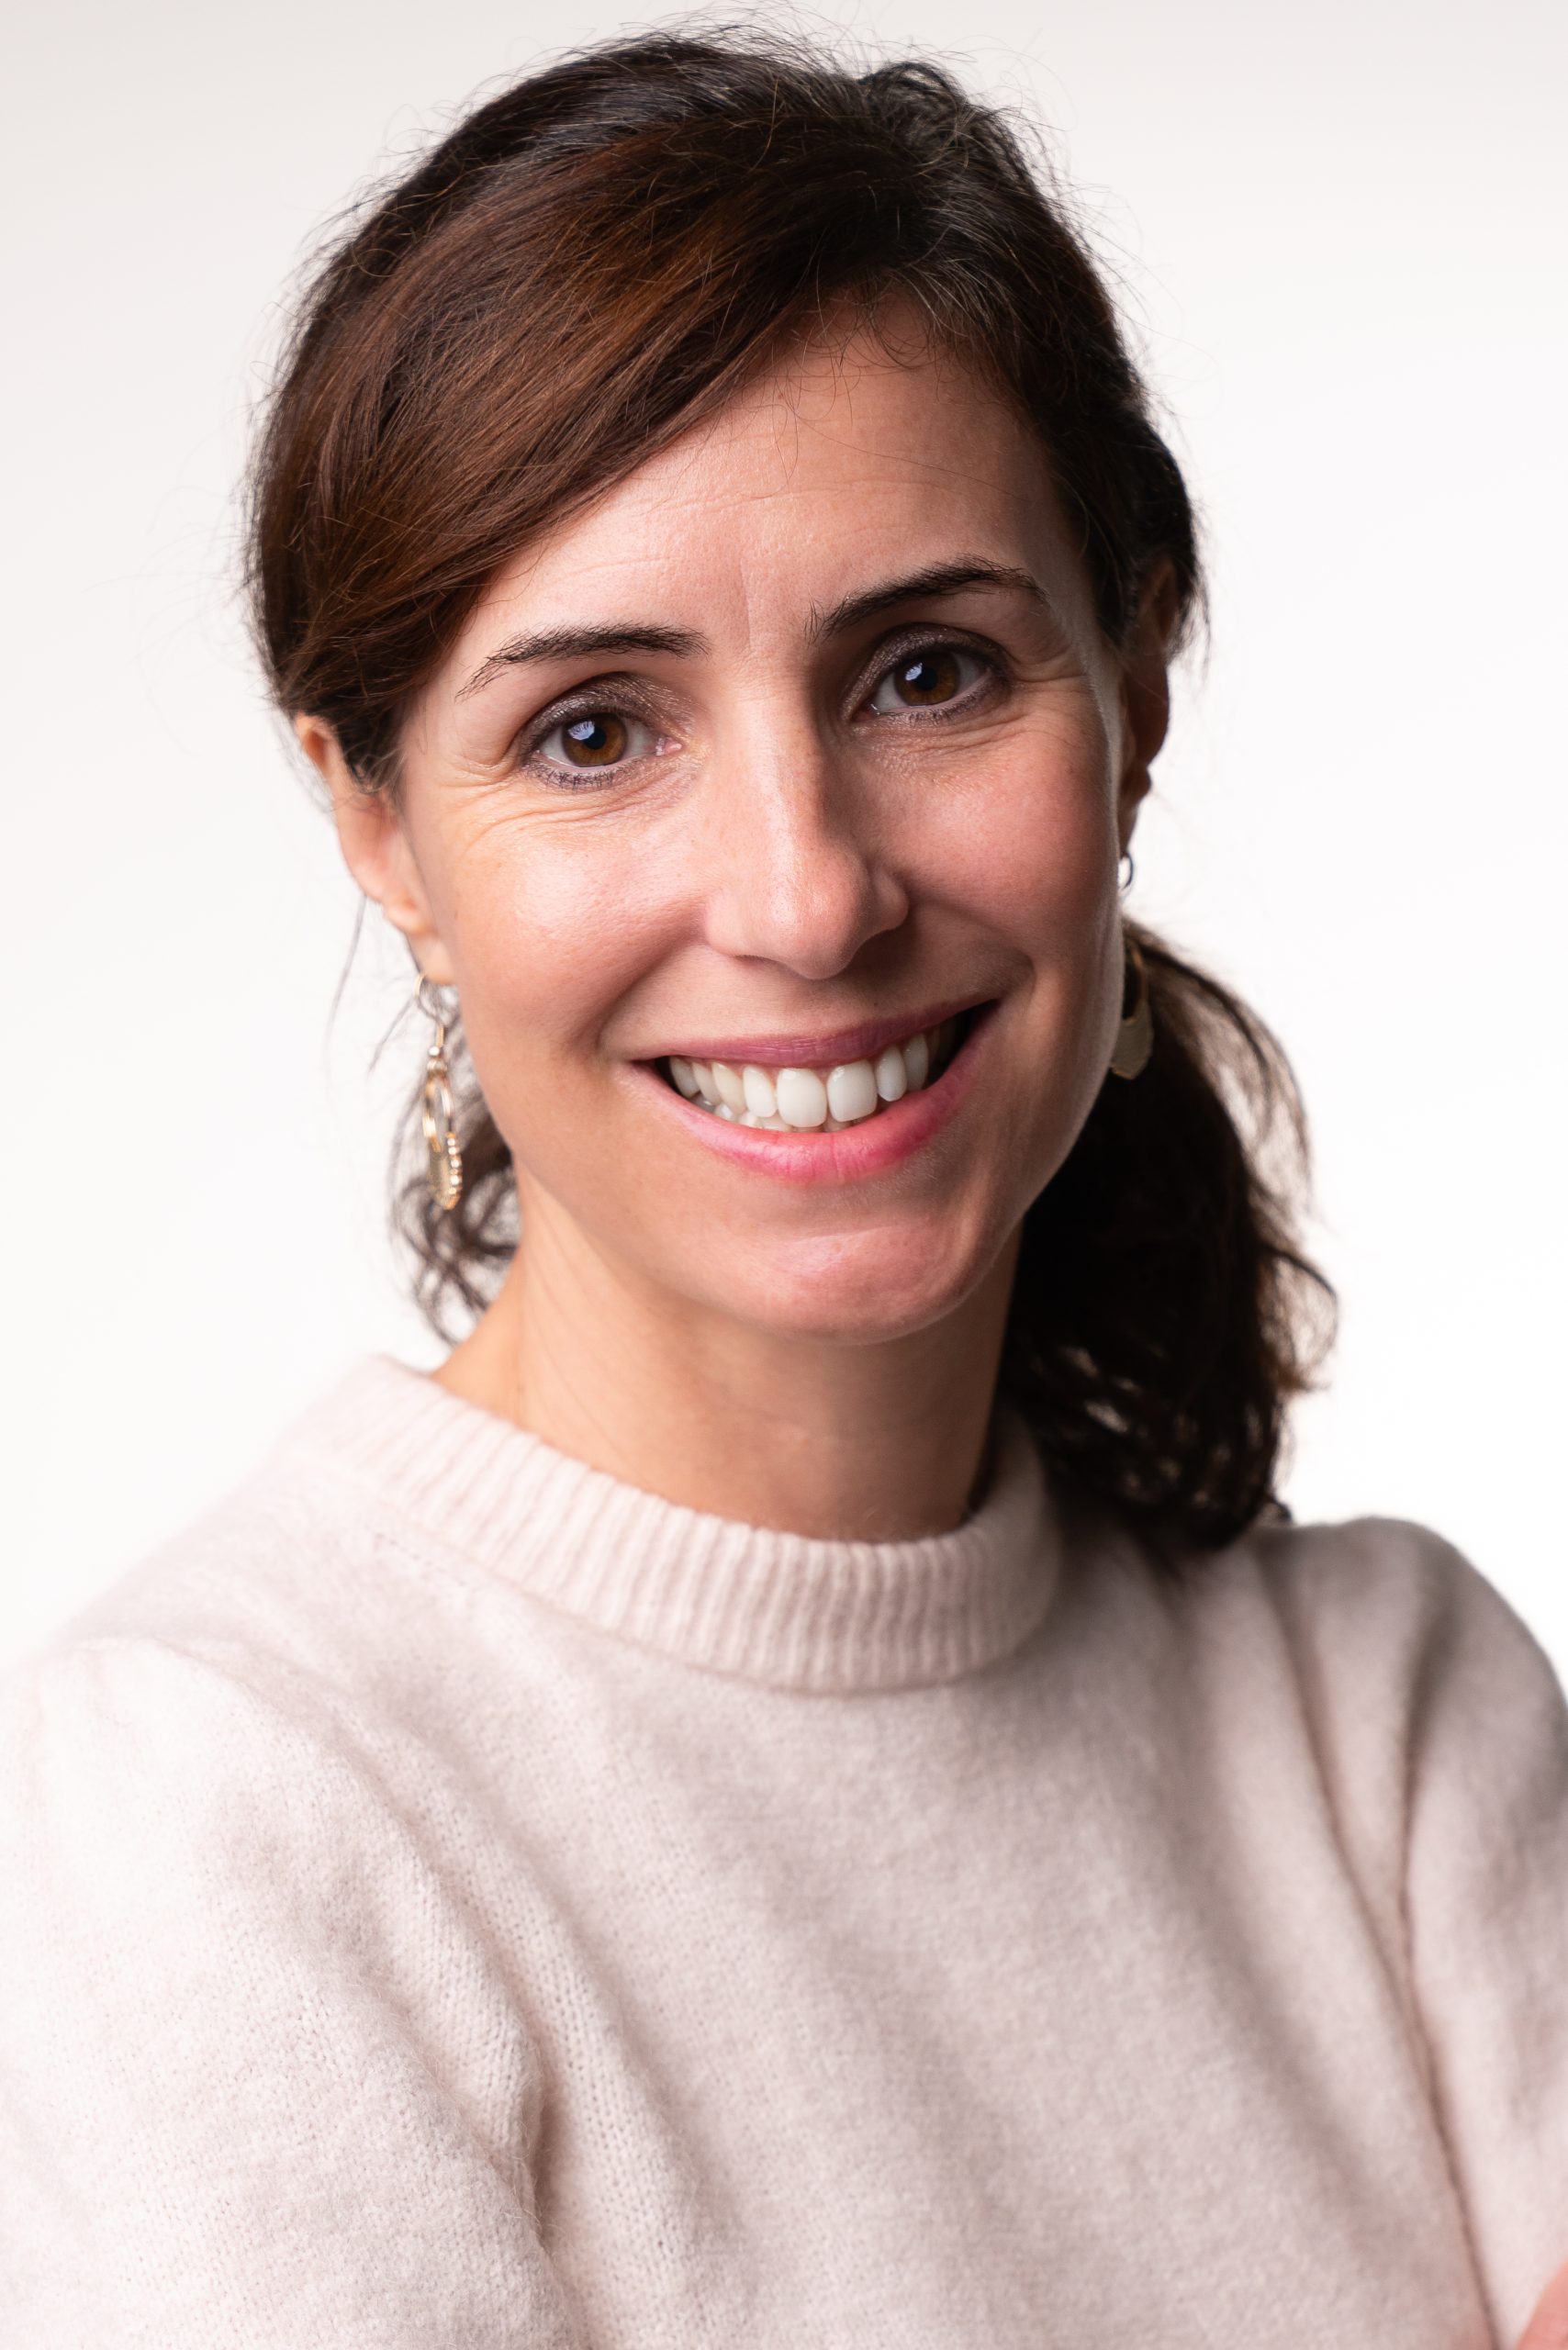 Profile Photo of ISHR staff Marie Elseroad.